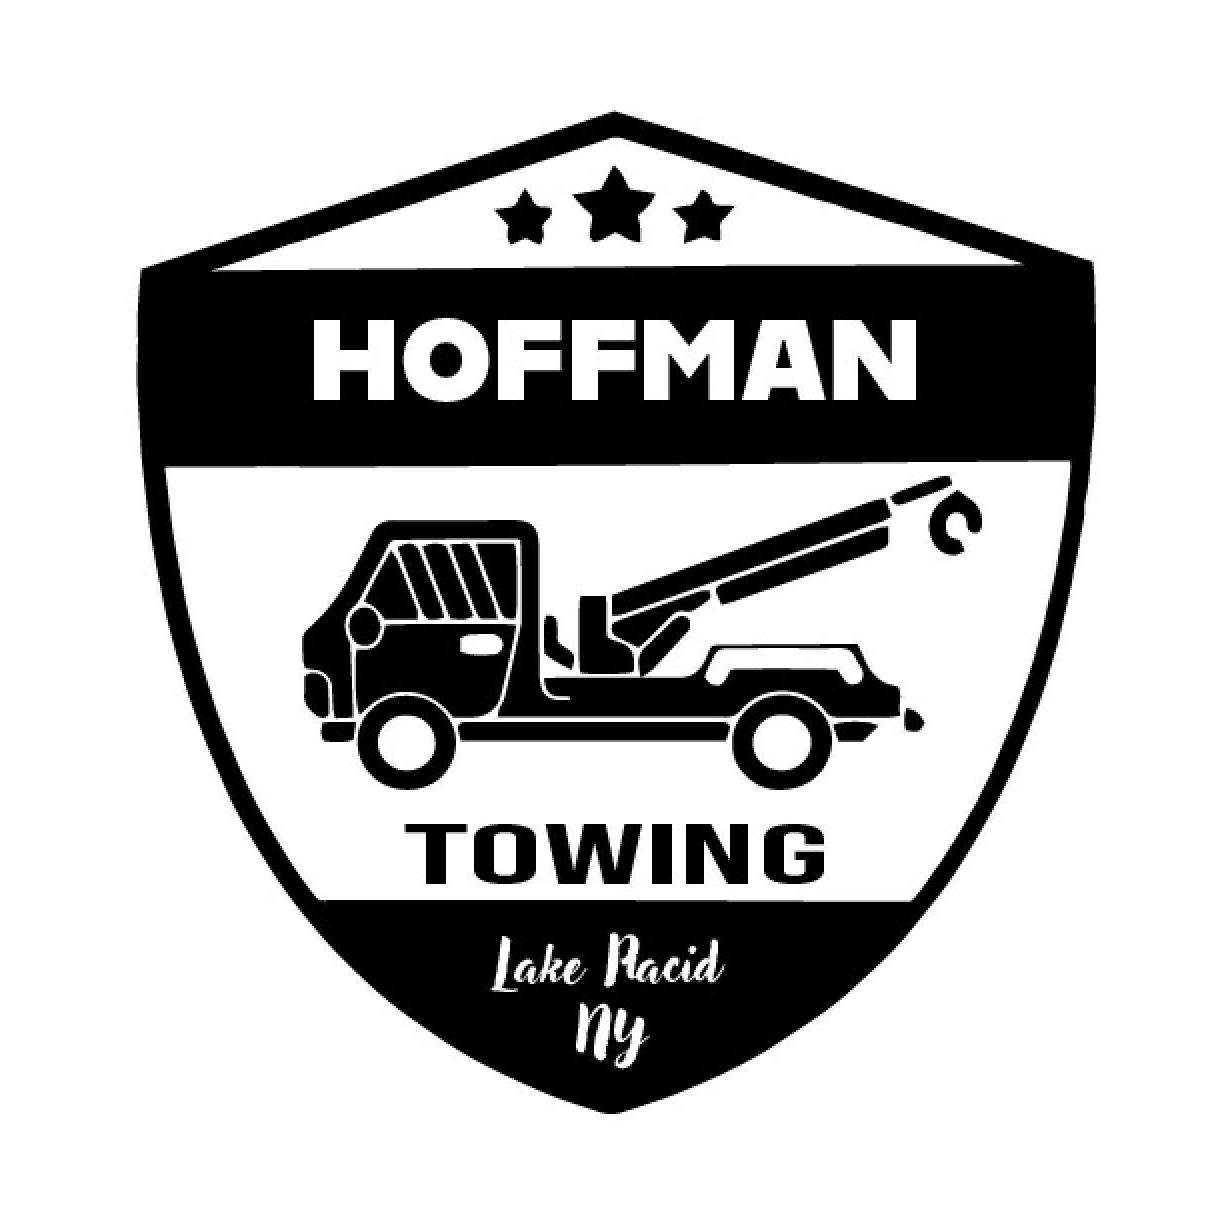 Hoffman Towing - Lake Placid, NY - (518)524-1074 | ShowMeLocal.com